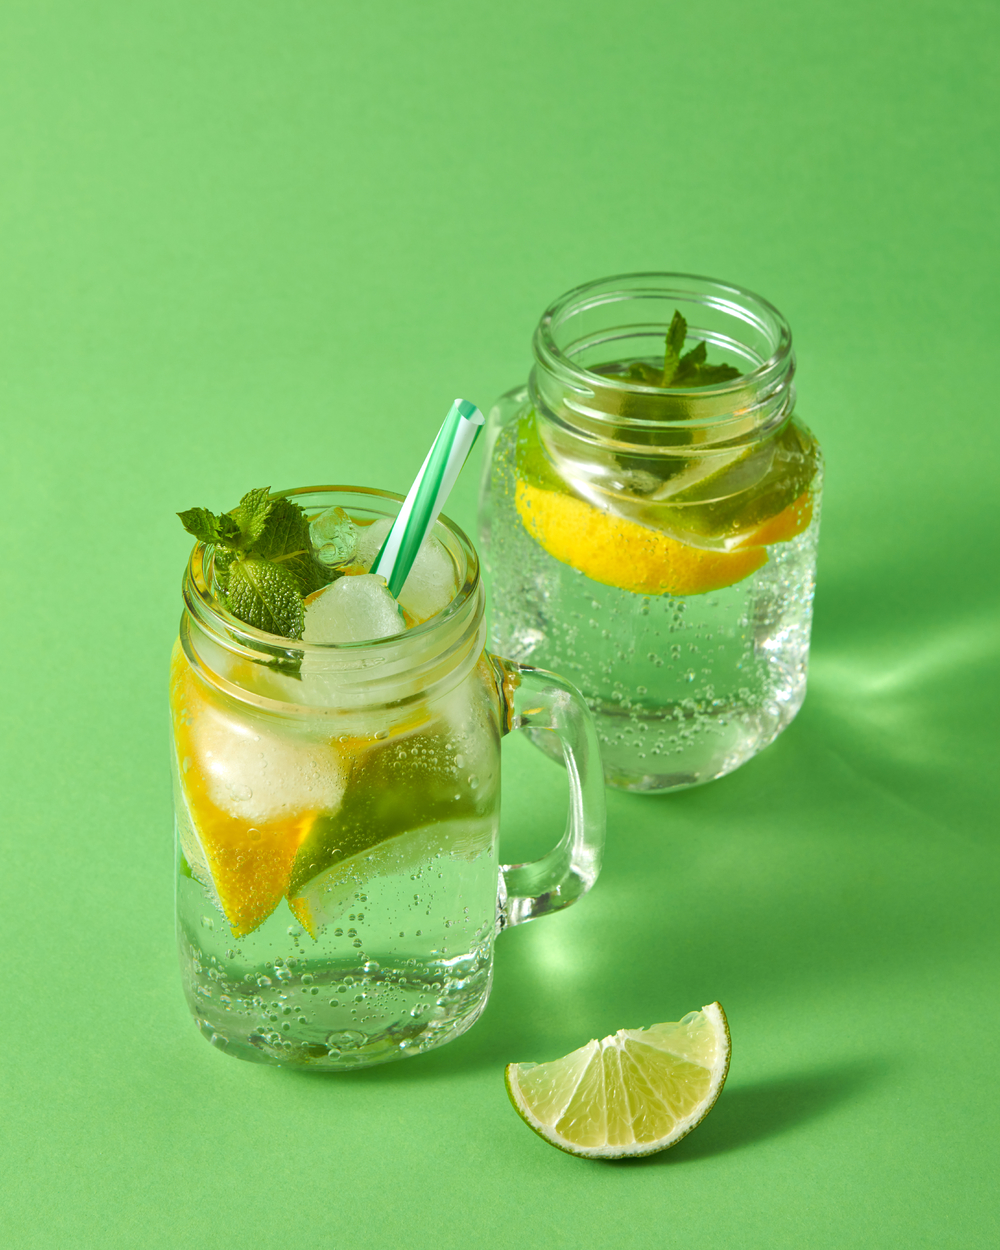 带有气泡的冷天然手工柠檬水两个玻璃梅森罐与绿色背景上的非酒精饮料冷酒精或非酒精夏季饮料的概念夏季清爽的鸡尾酒来自天然柑橘类水果在绿色背景的玻璃杯中加入冰水薄荷和塑料吸管